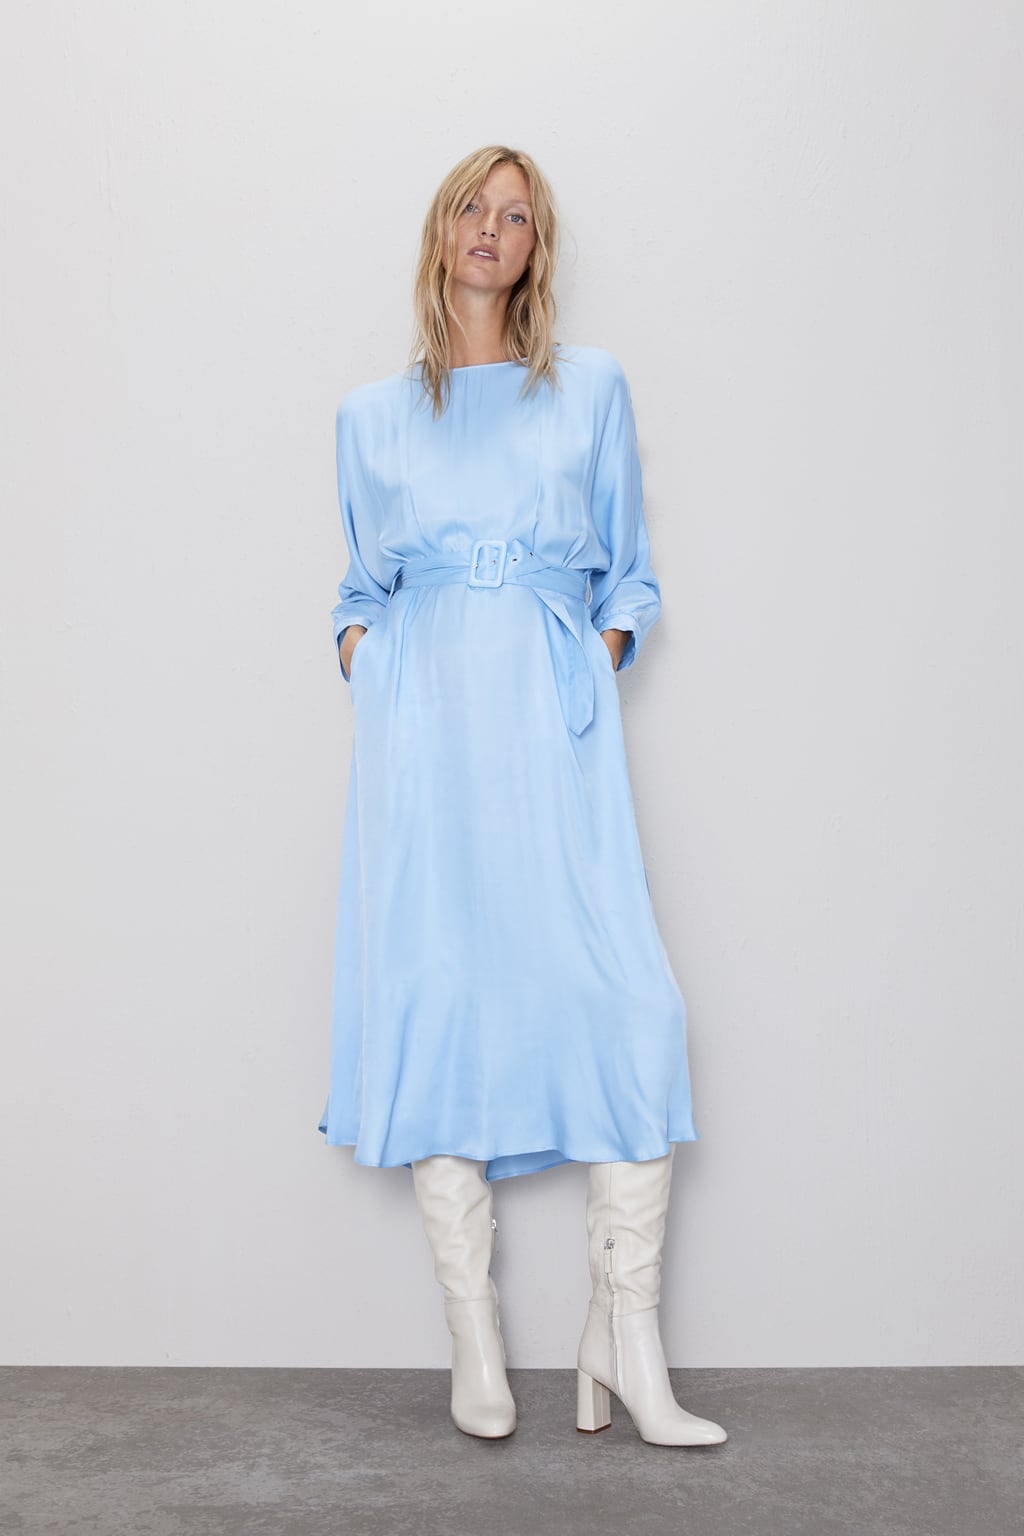 light blue dress zara